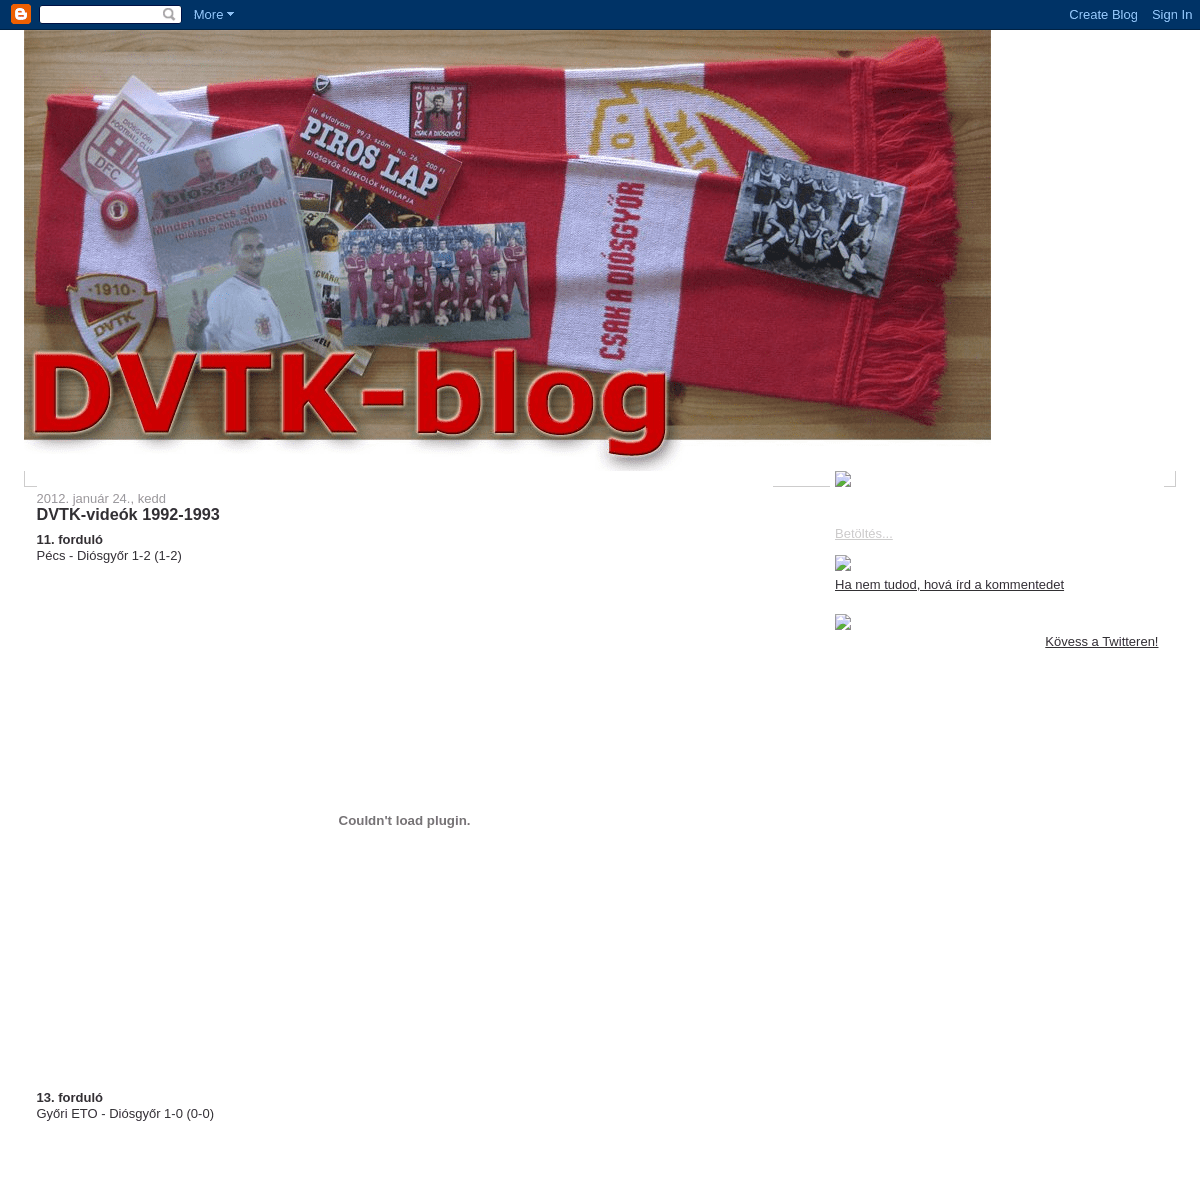 A complete backup of dvtk-blog.blogspot.com